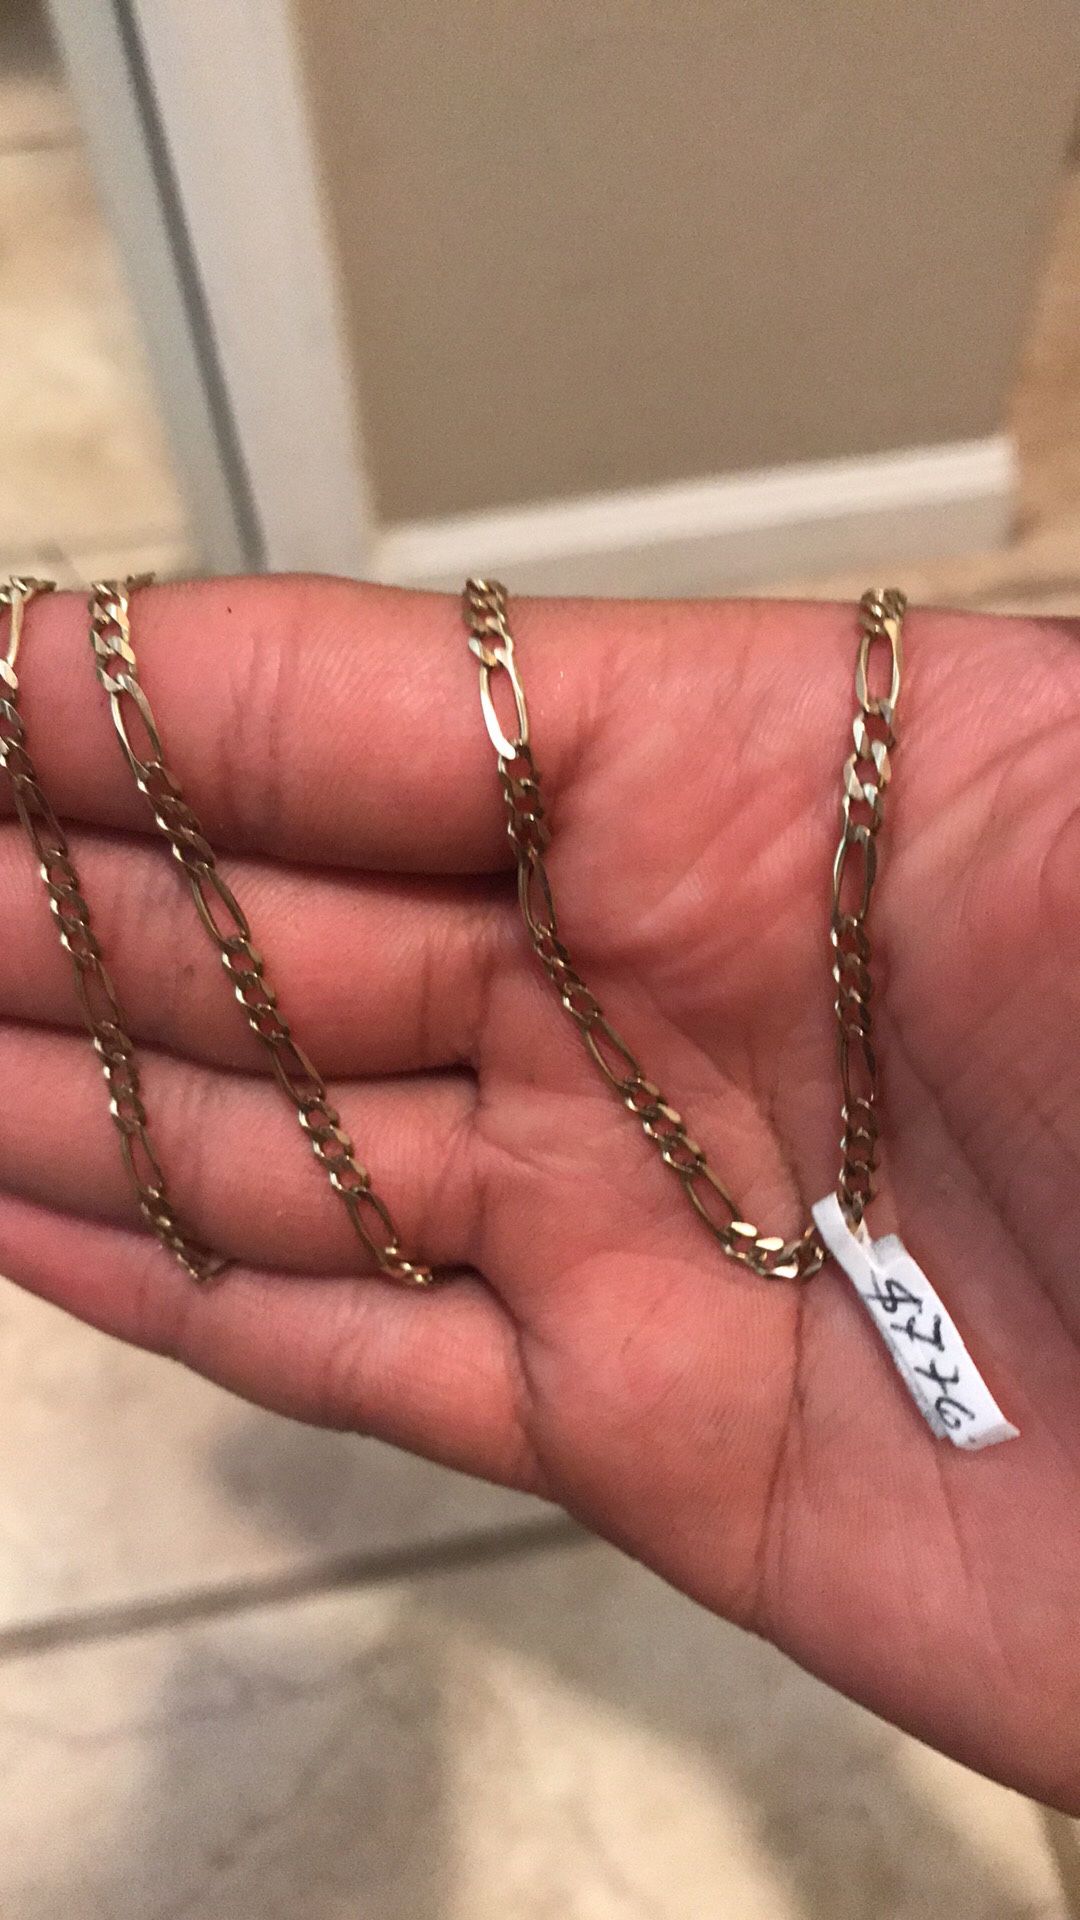 14k solid gold fígaro chain